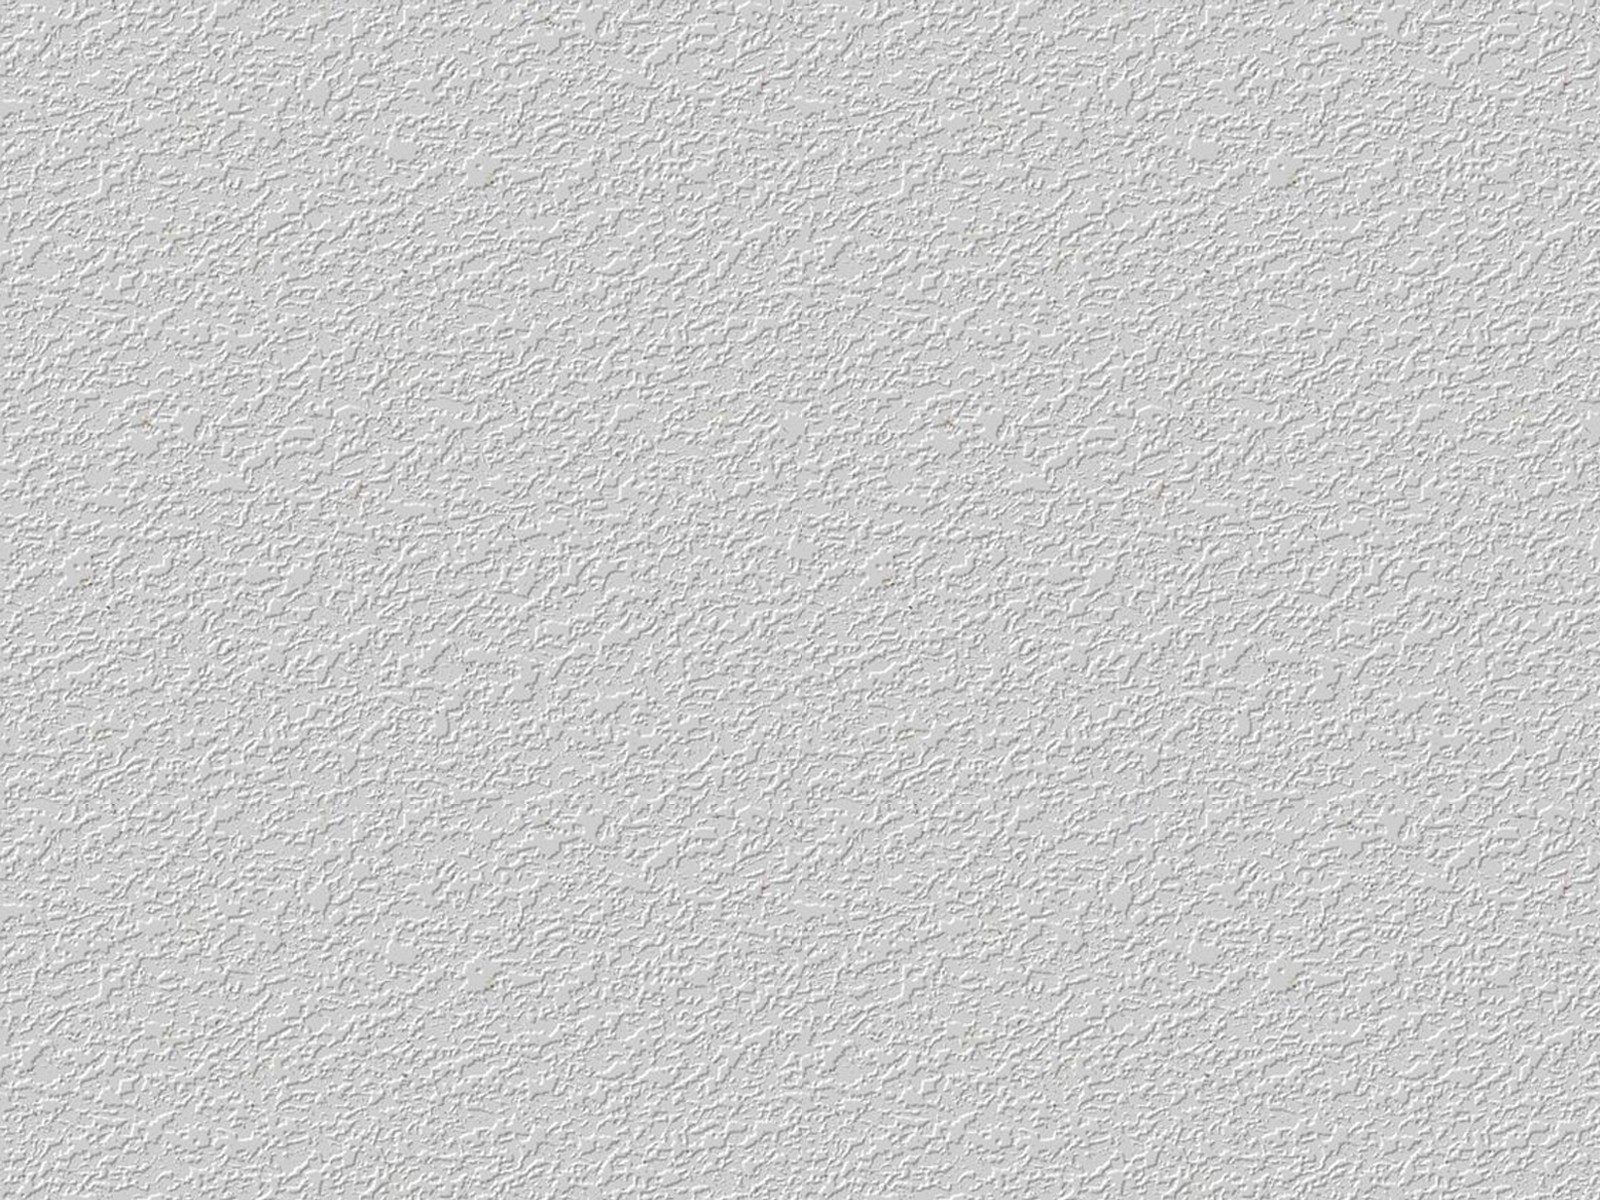 内墙涂料-天鹅丝绒装修案例 - 天鹅丝绒 - 佛山市顺德区美轮美奂艺术涂料有限公司